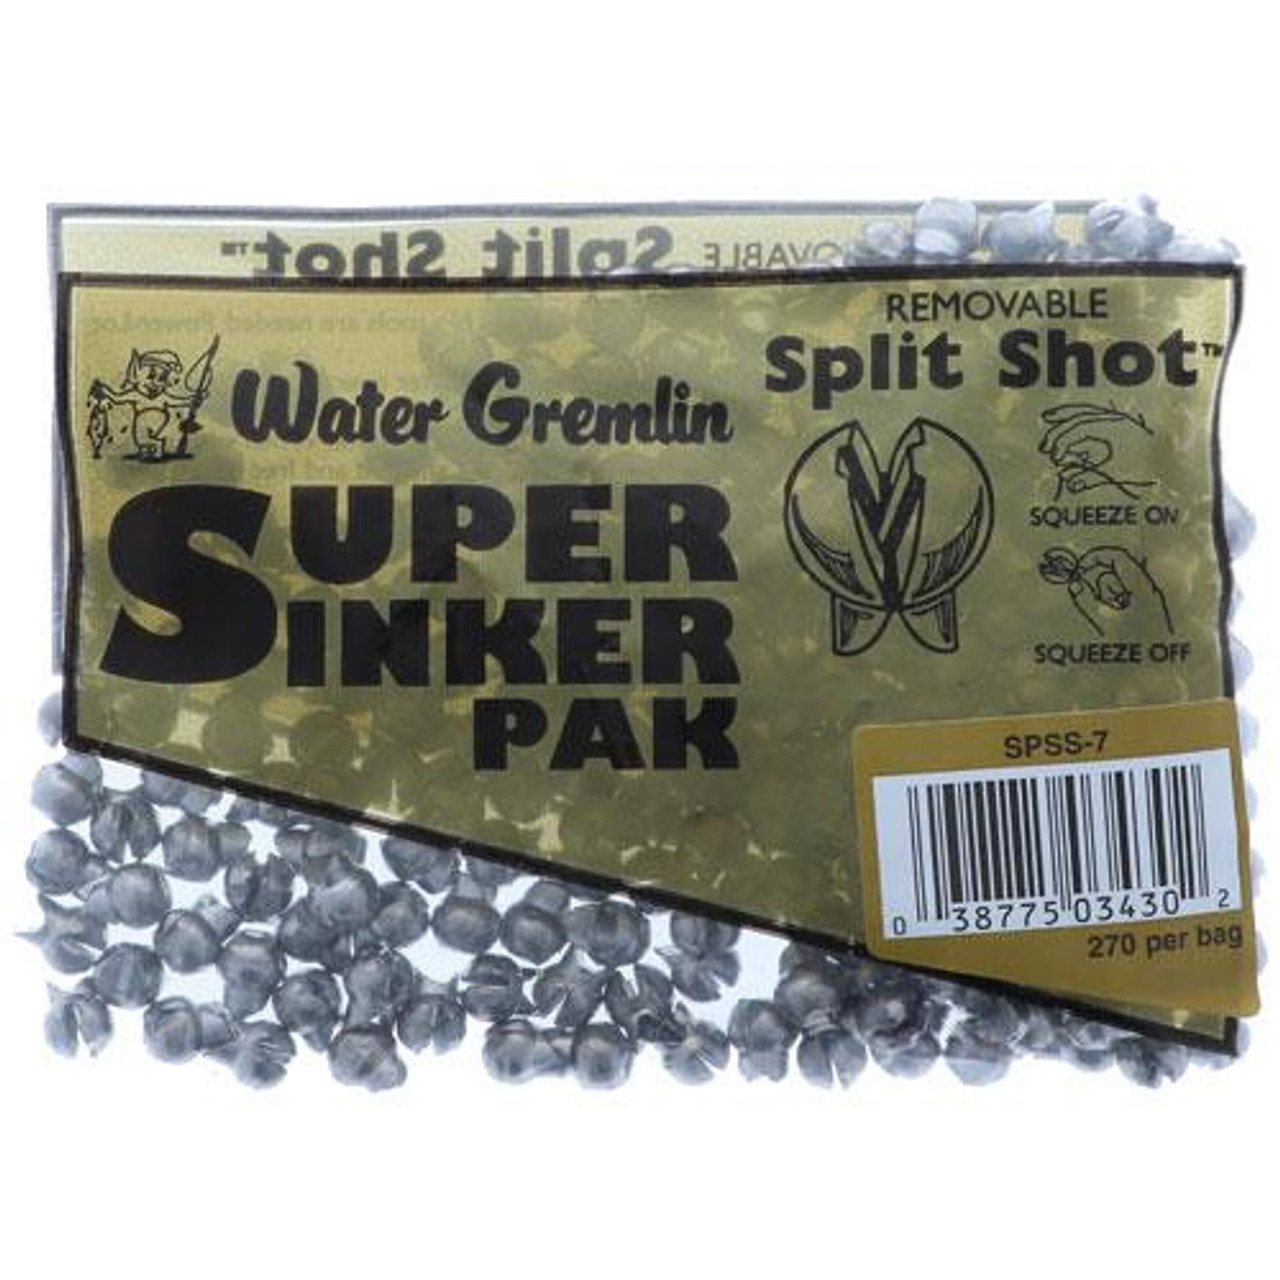 Water Gremlin Super Pack Split Shot